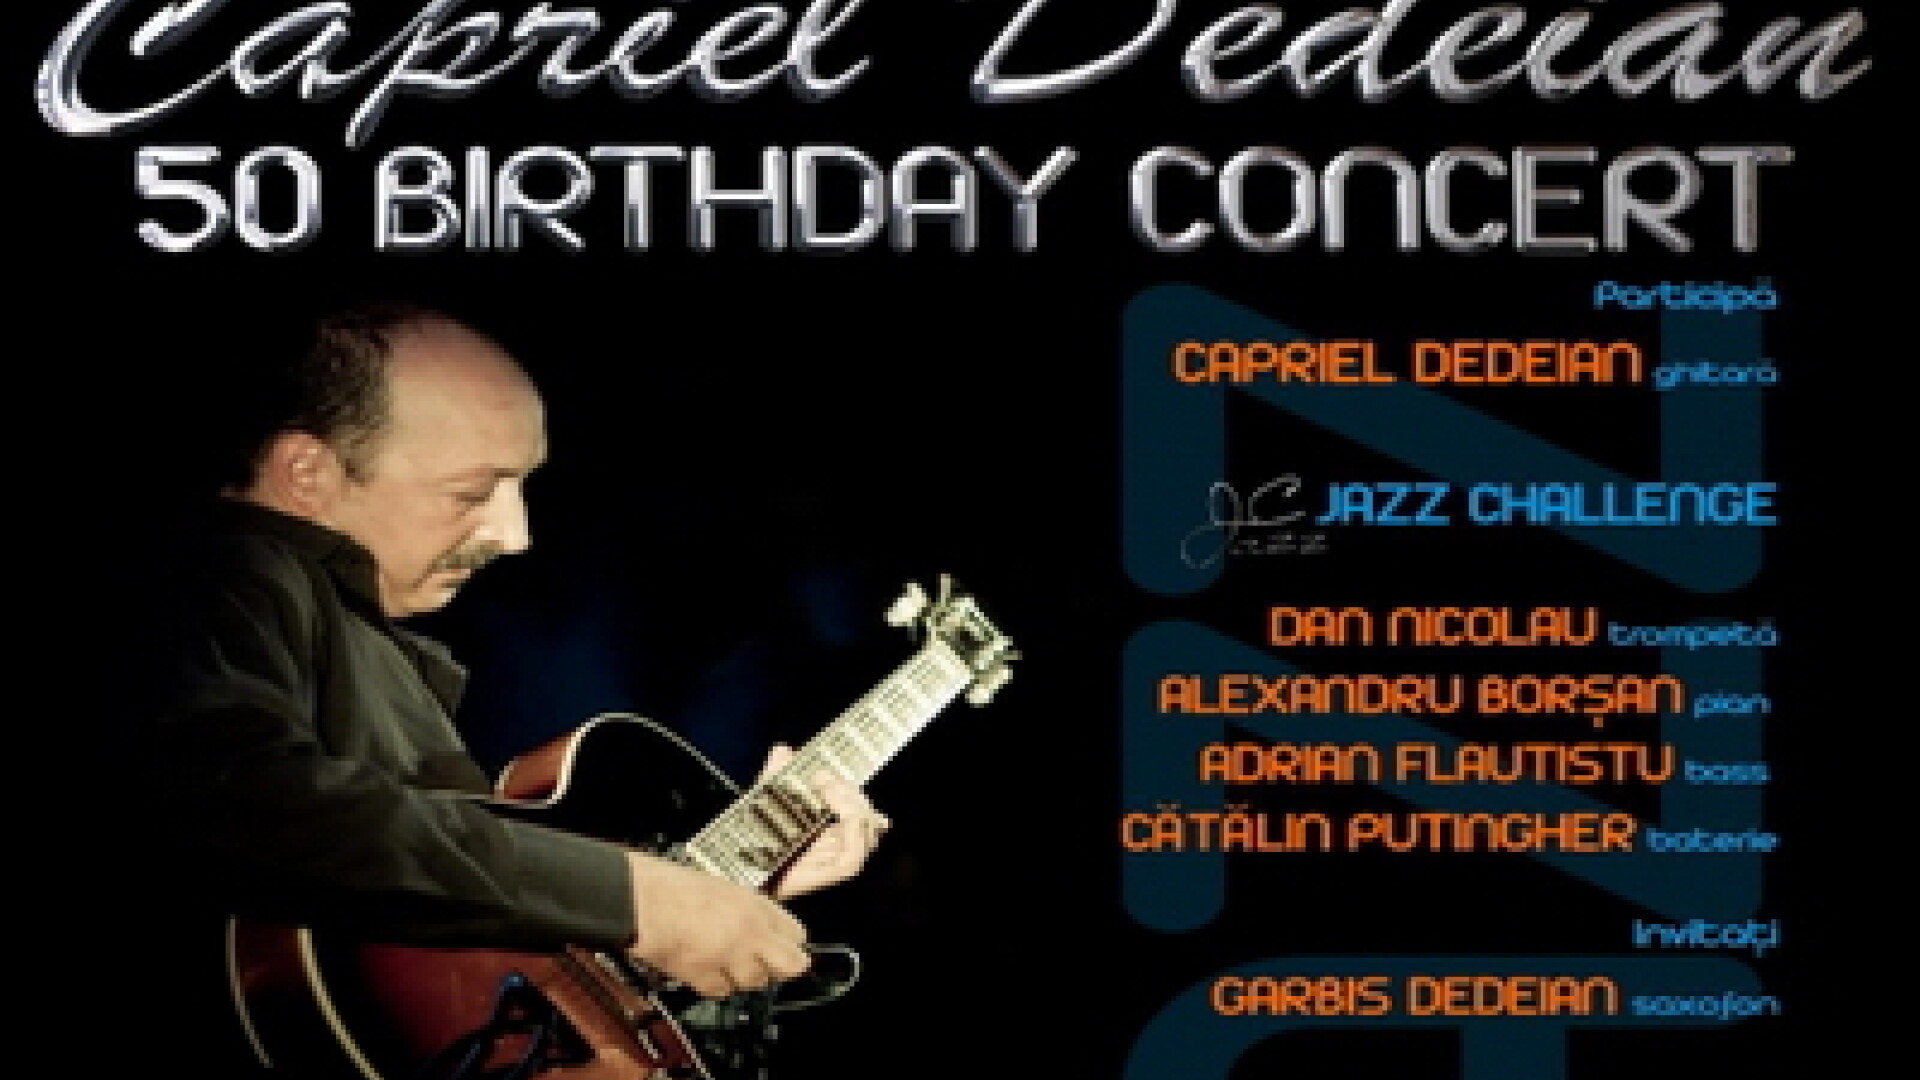 Concert Capriel Dedeian